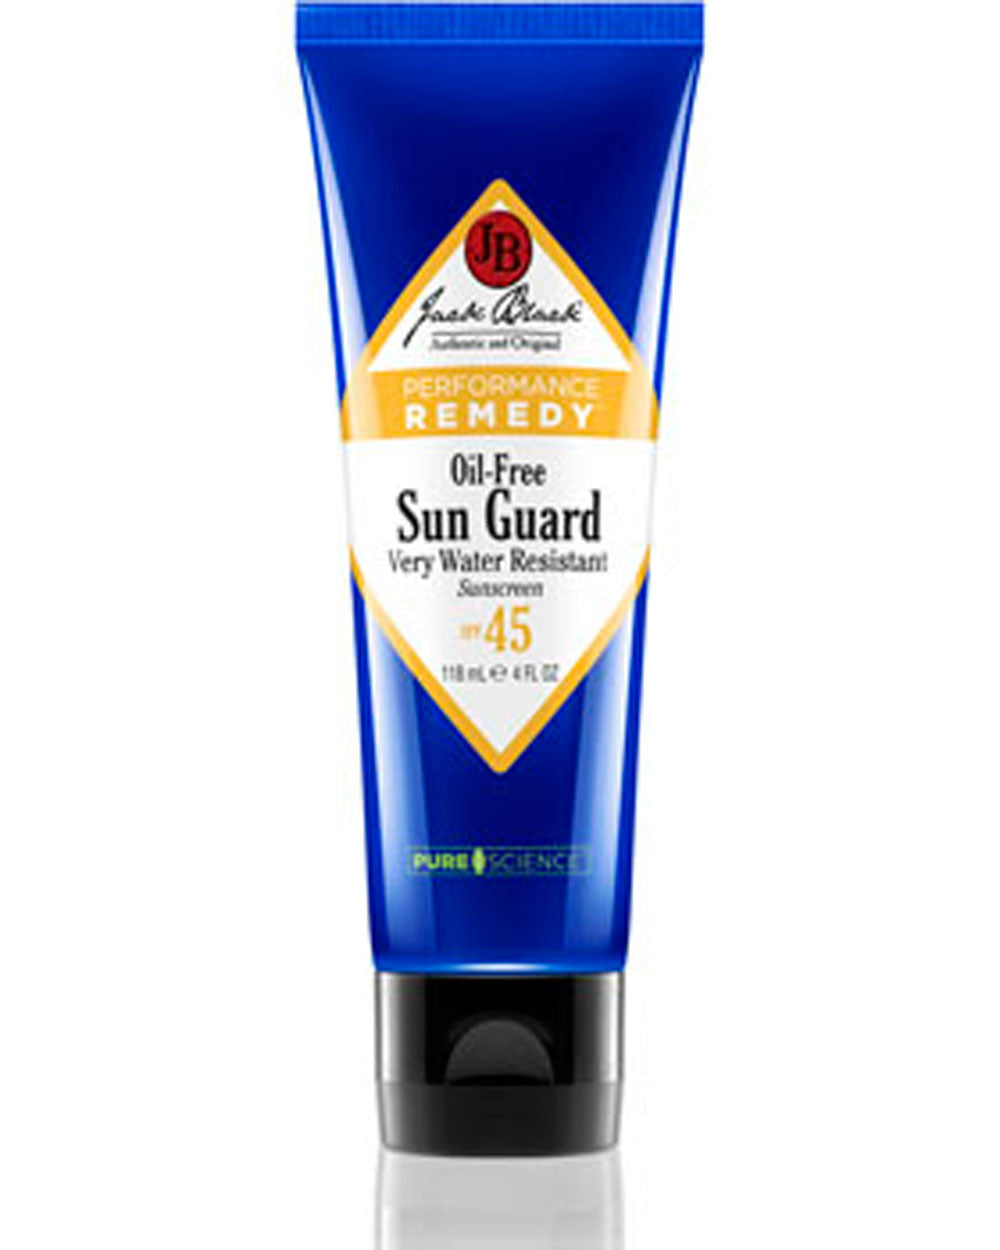 Sun Guard Sunscreen